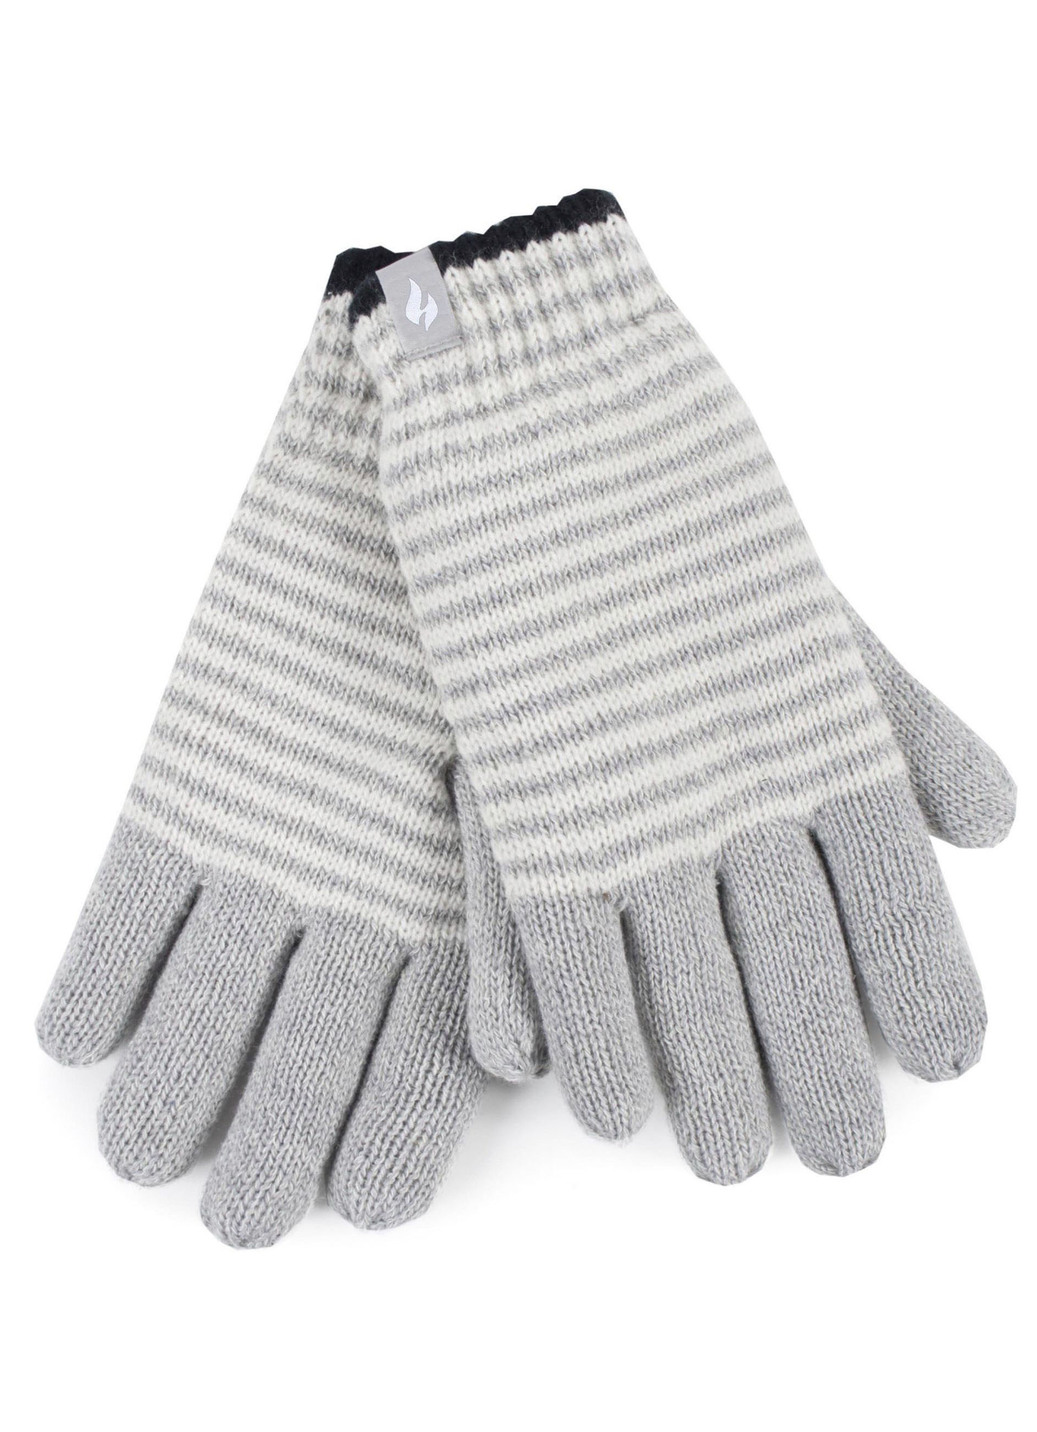 Thermo-Handschuhe von Heat Holders® für mehr Komfort im Winter, Grau, Größe 2 von BADER